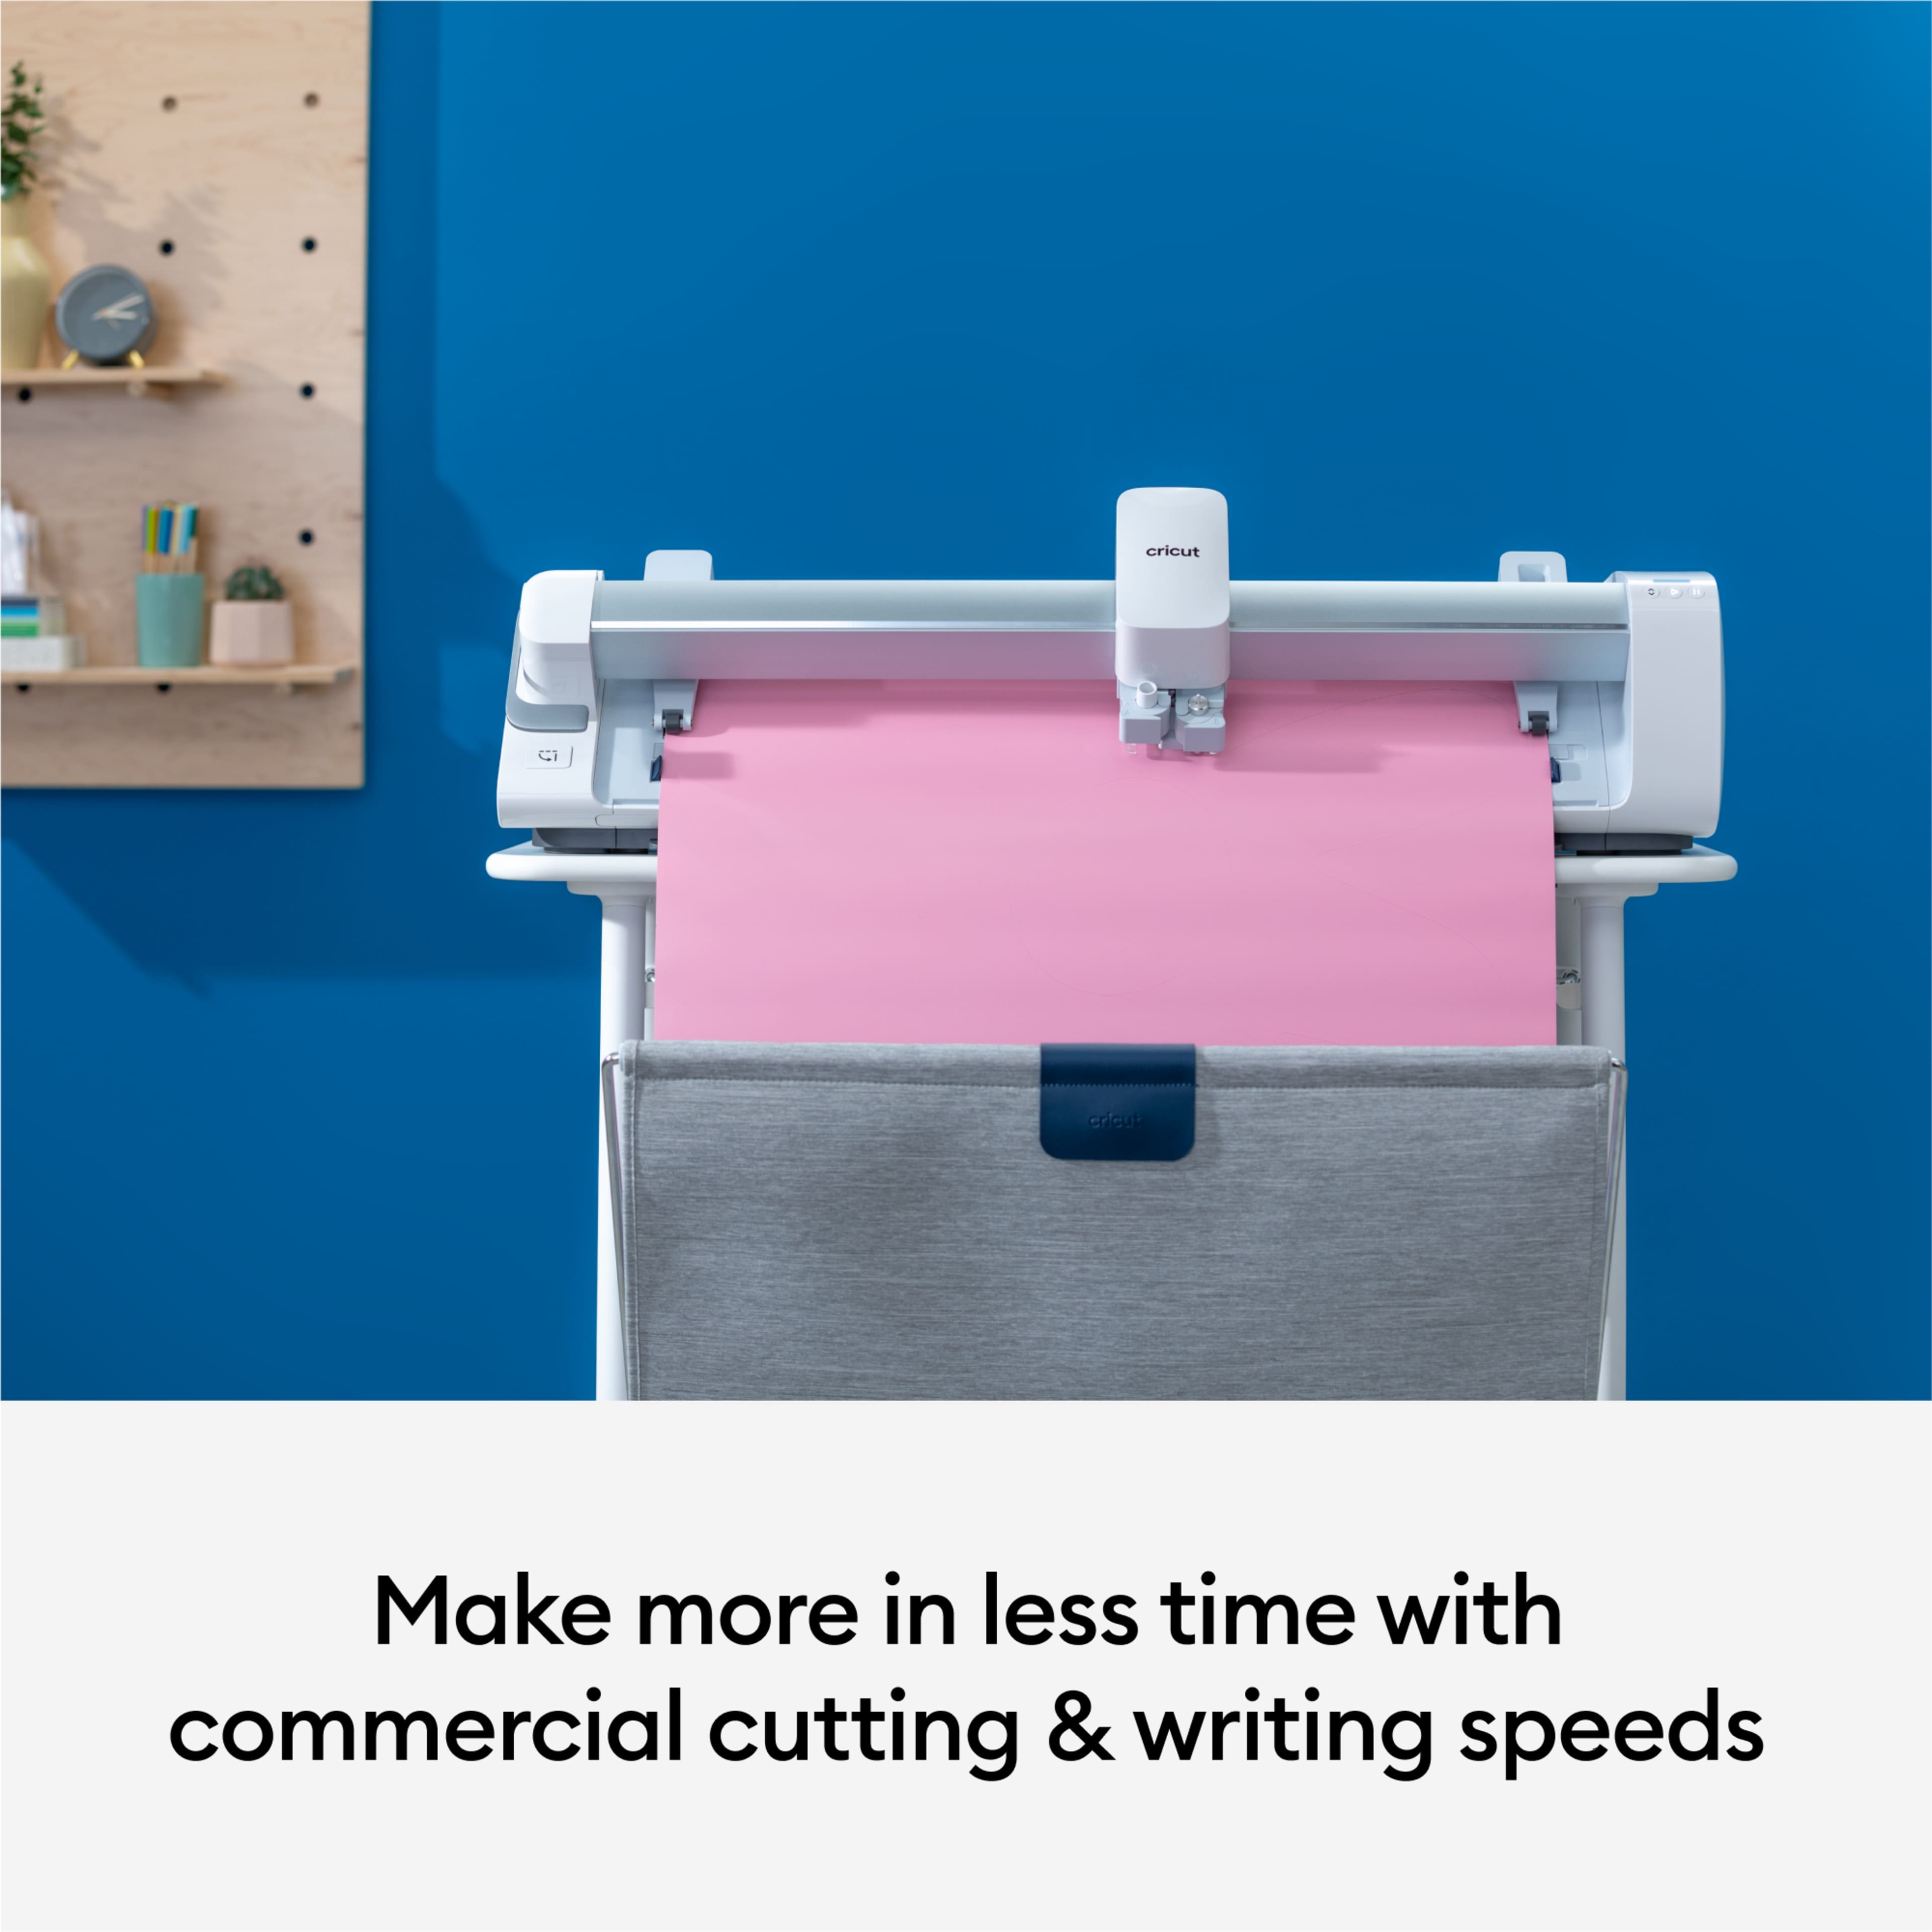 Cricut Venture Smart Cutting Machine